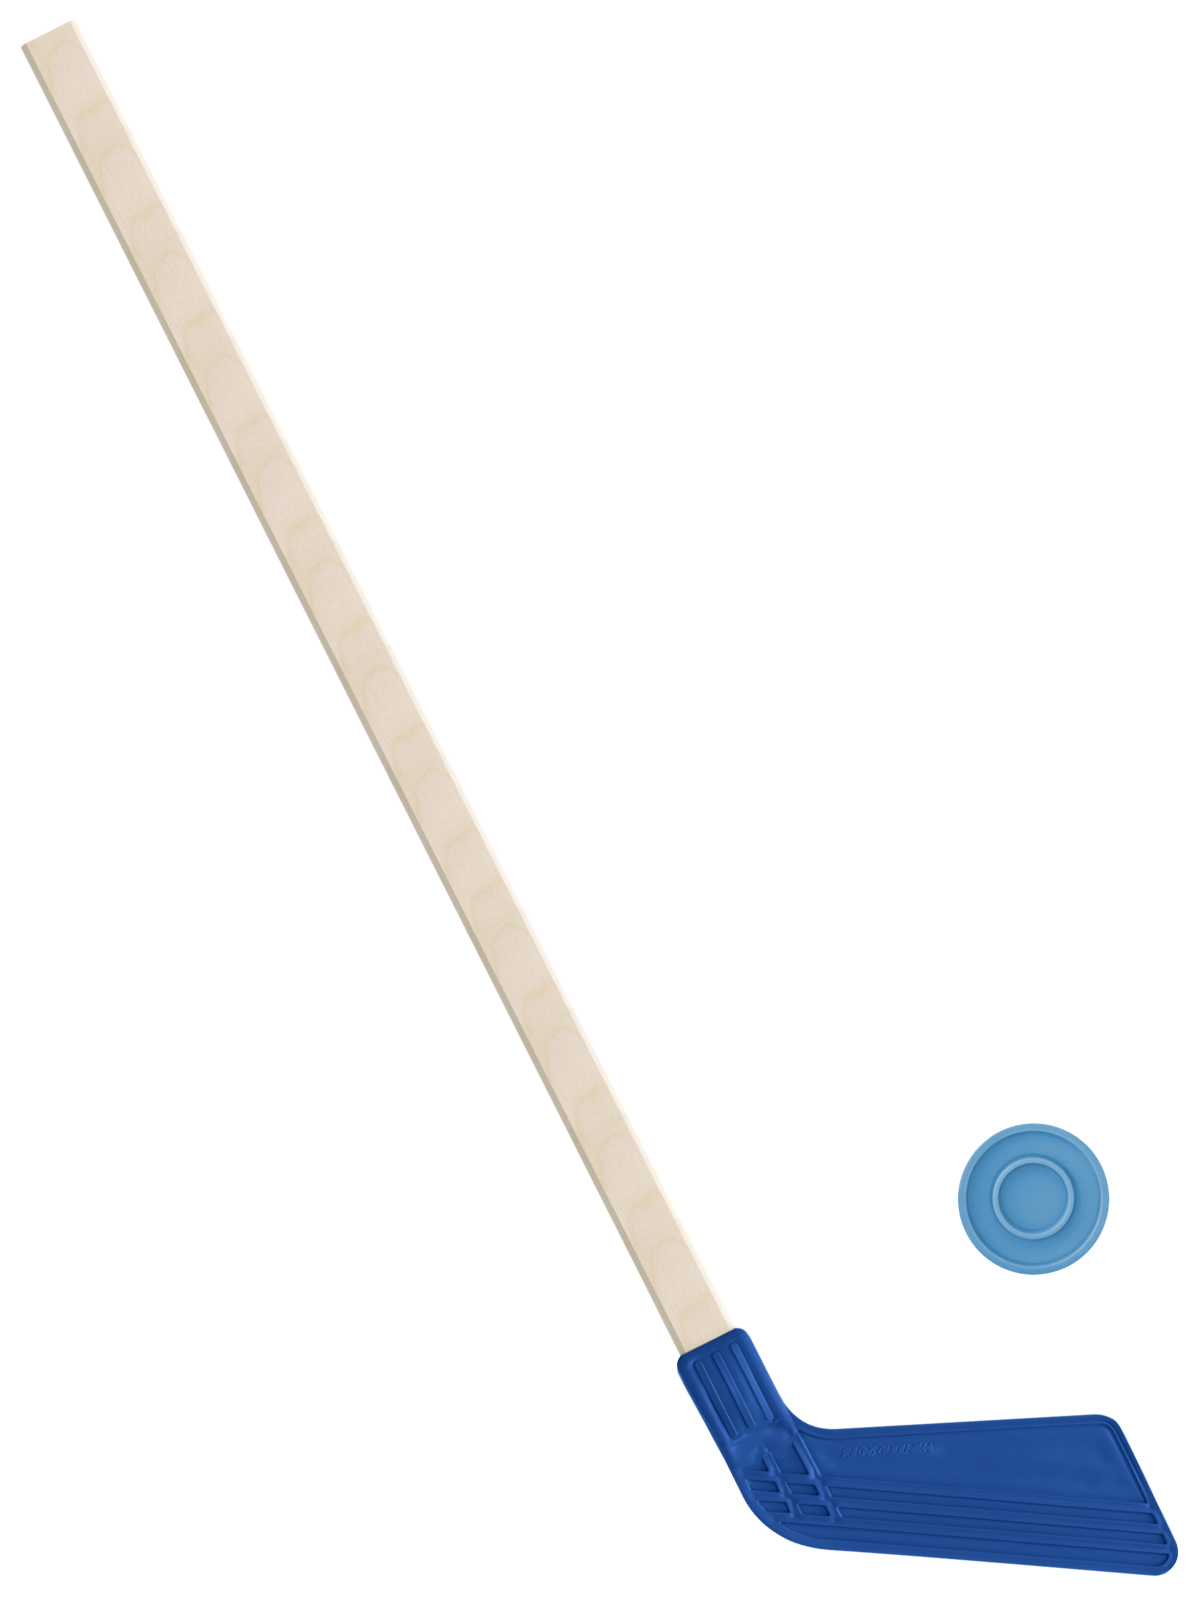 Детский хоккейный набор Задира-плюс, клюшка хоккейная 80 см (синяя)+шайба детский хоккейный набор задира плюс клюшка хоккейная 2шт син чёрн 2шайбы шайба 75 мм